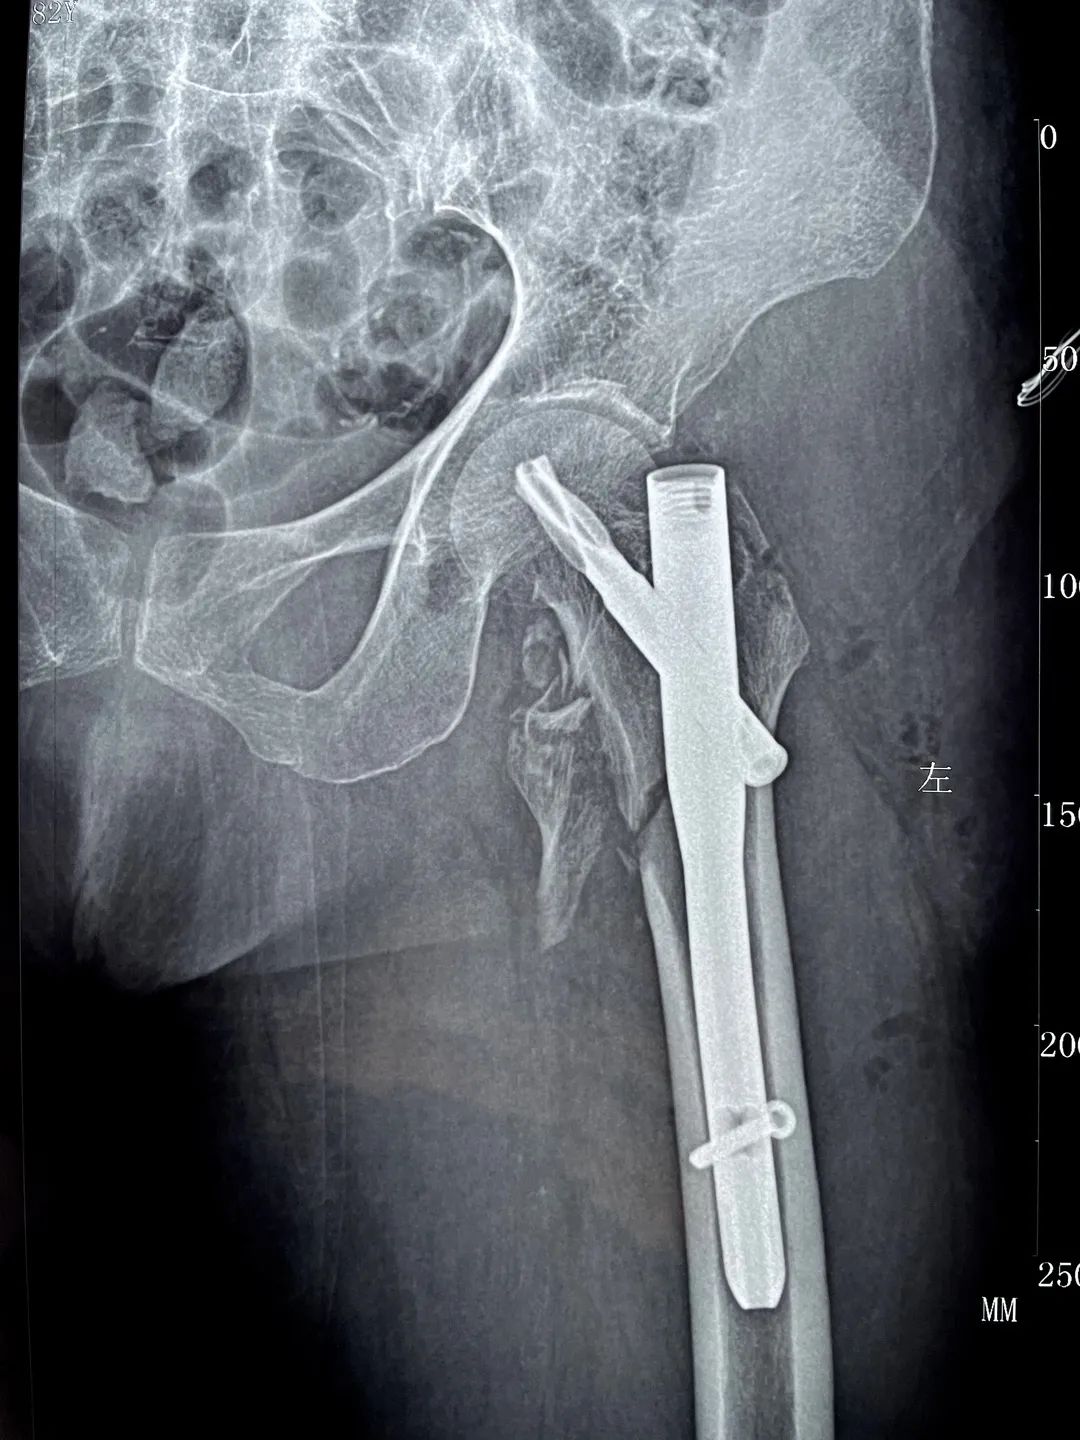 长春骨伤医院顺利为 84 岁高龄老人完成「左侧股骨粗隆间骨折闭合复位内固定手术」